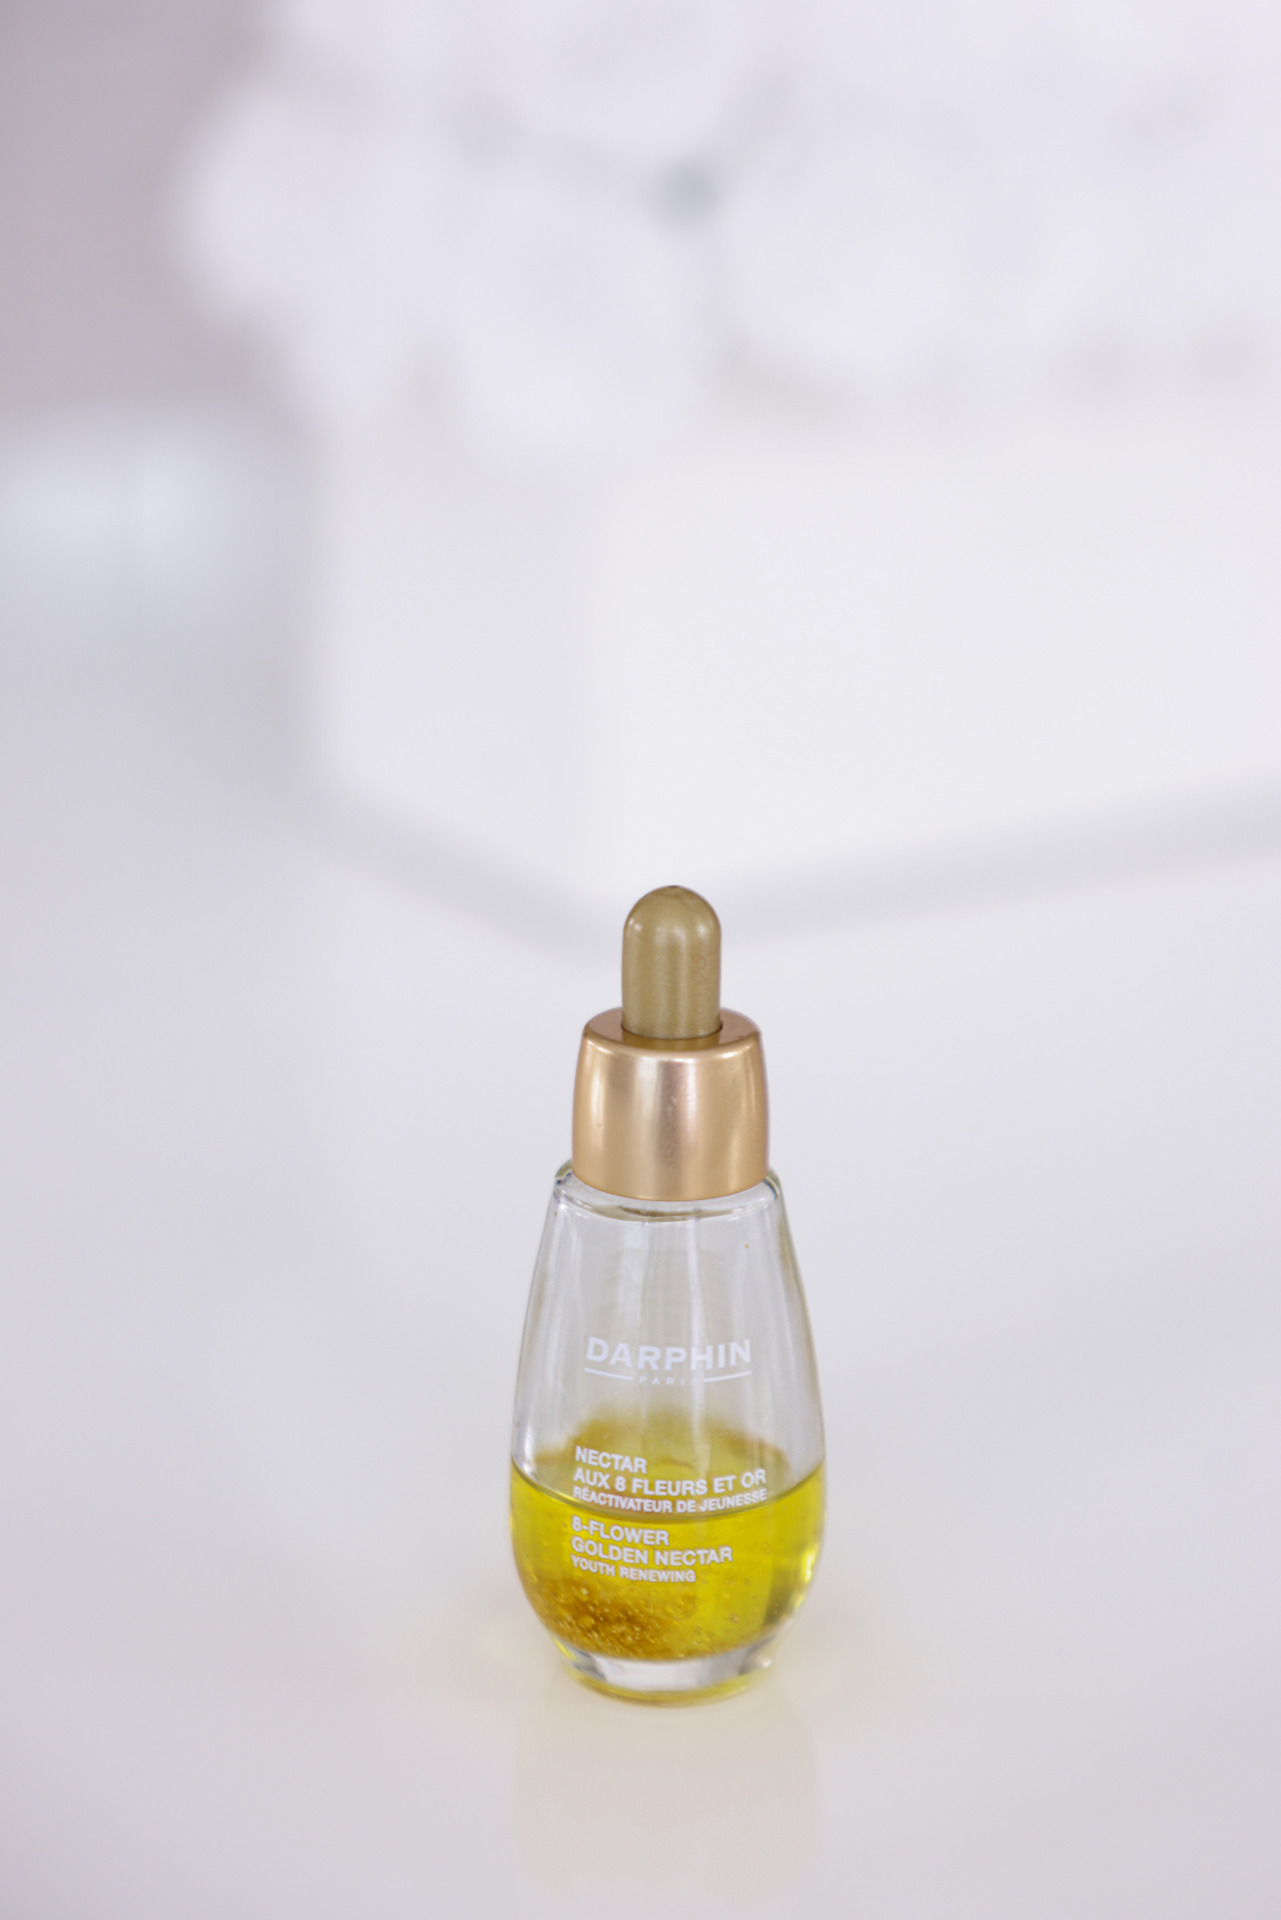 Darphin 8-Flower Golden Nectar Skin Renewing Oil